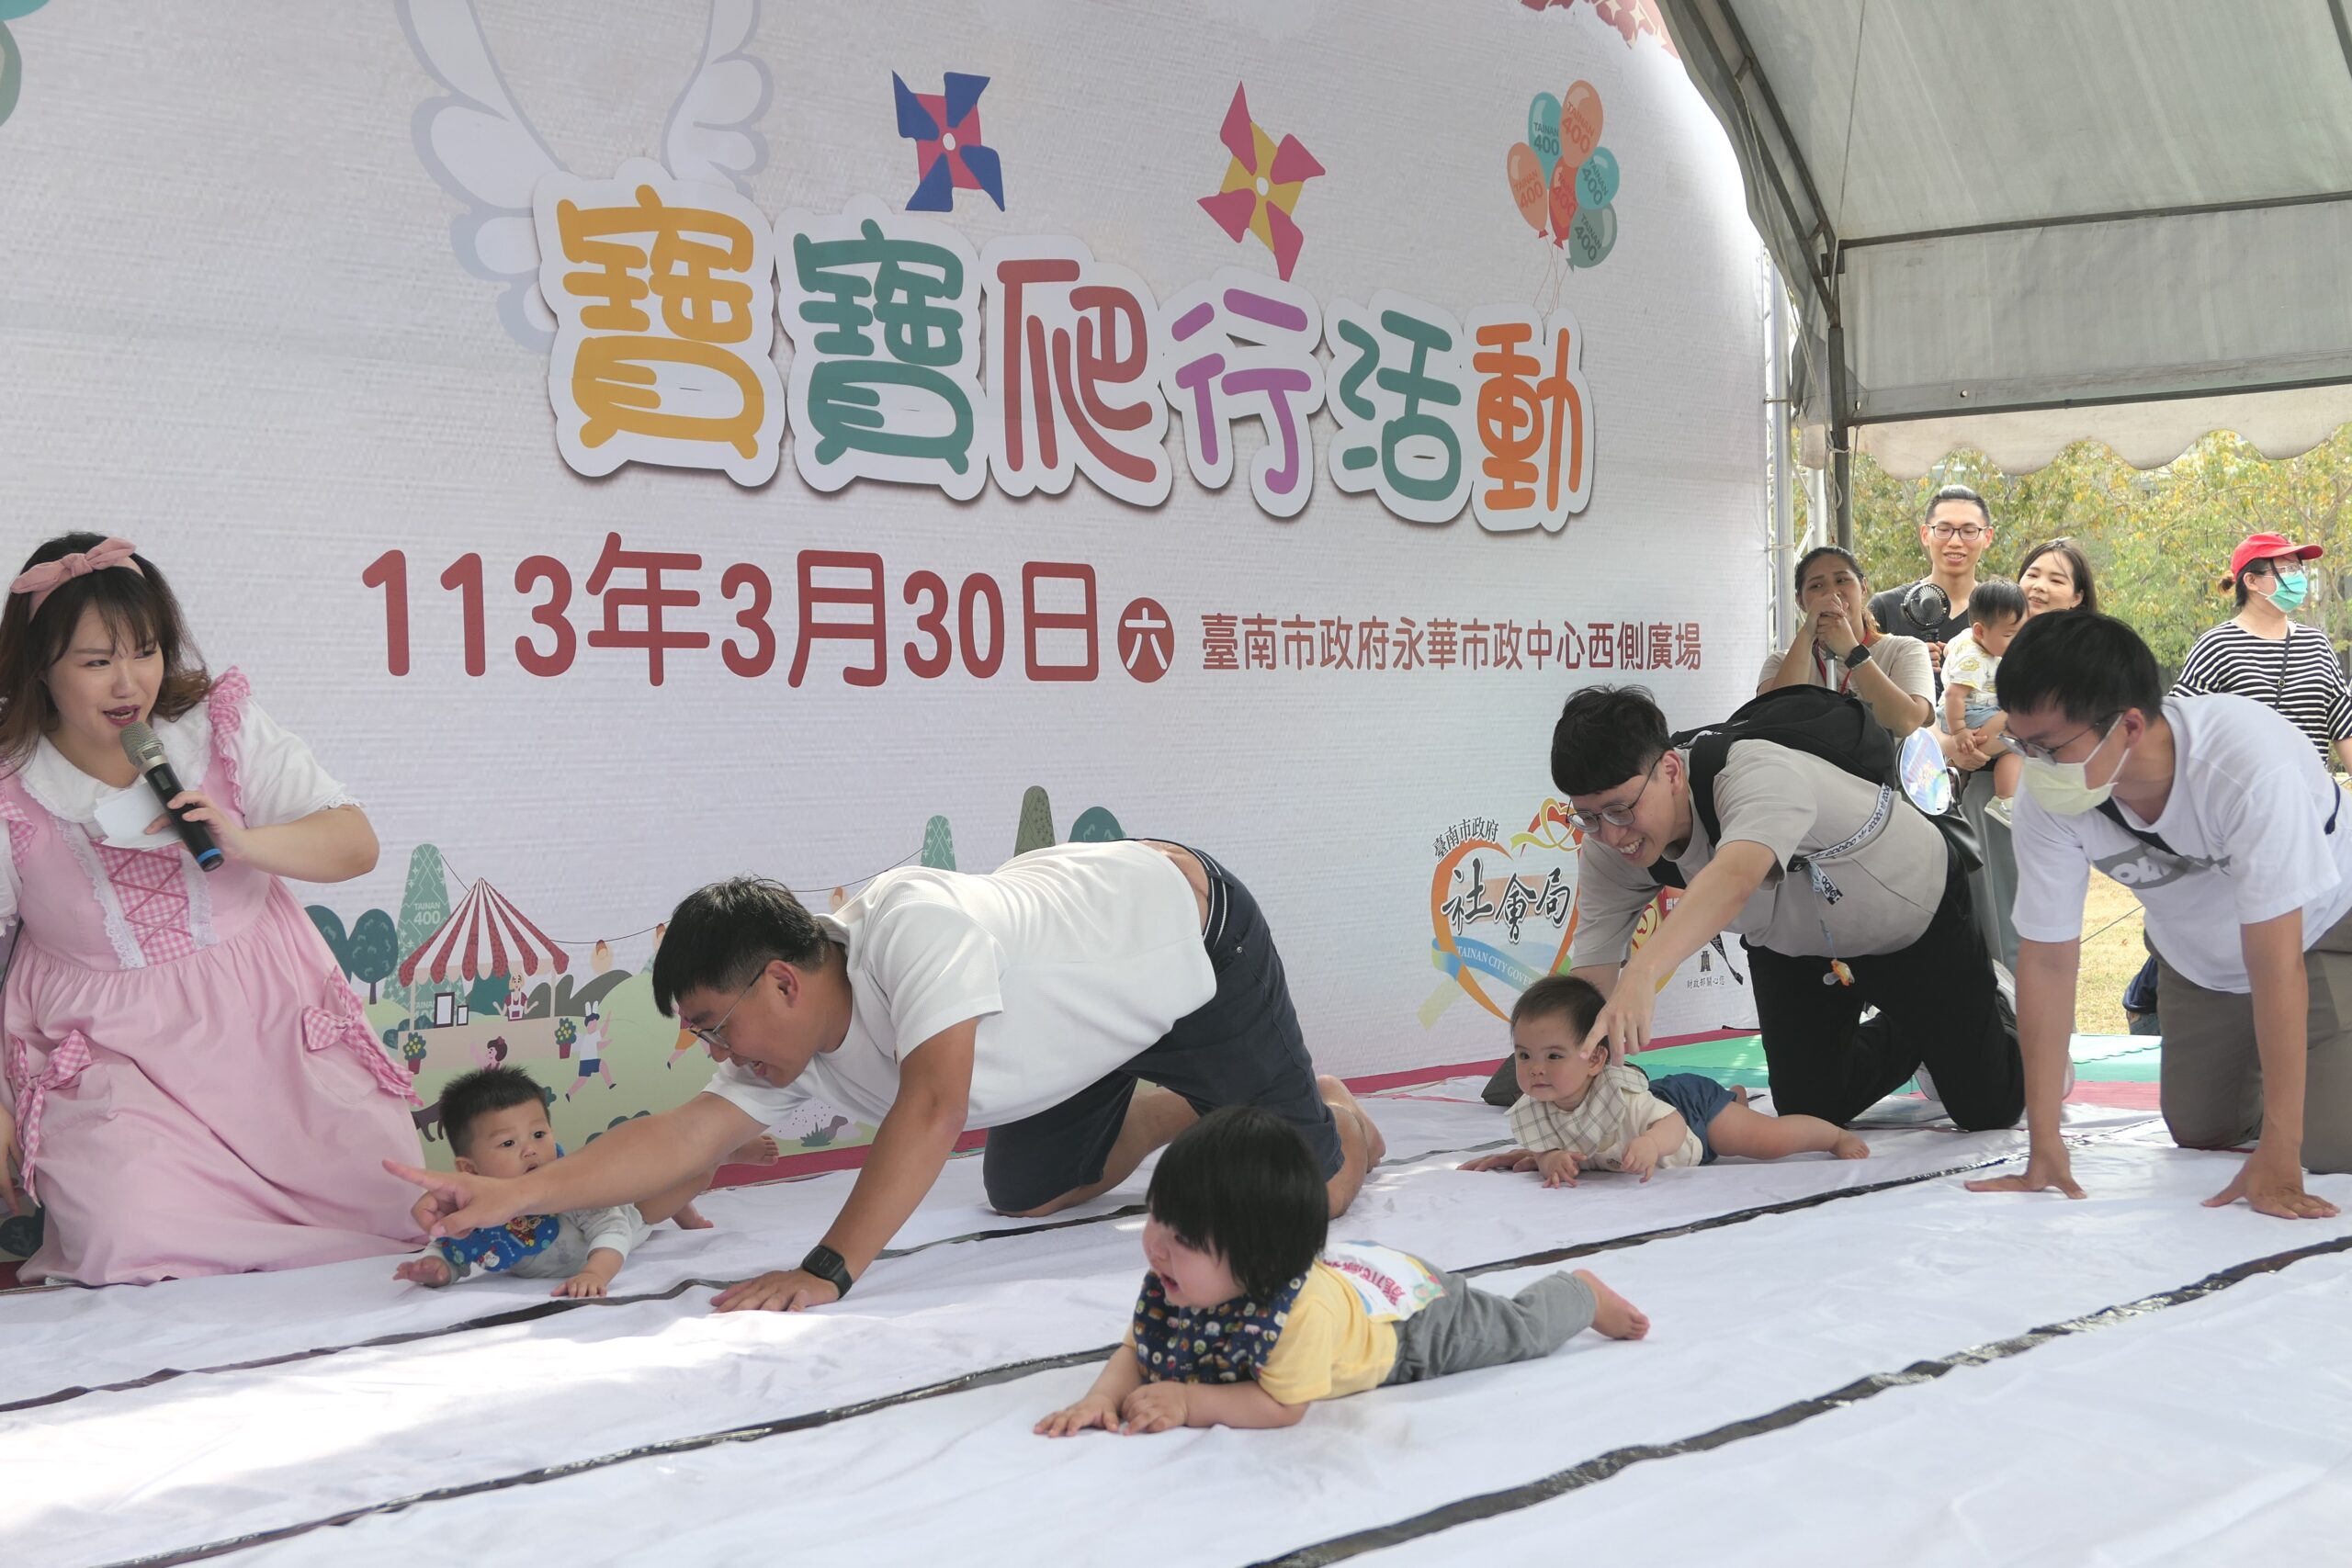 臺南400童樂會 南市提前慶祝兒童節黃偉哲多項友善措施支持家長育兒